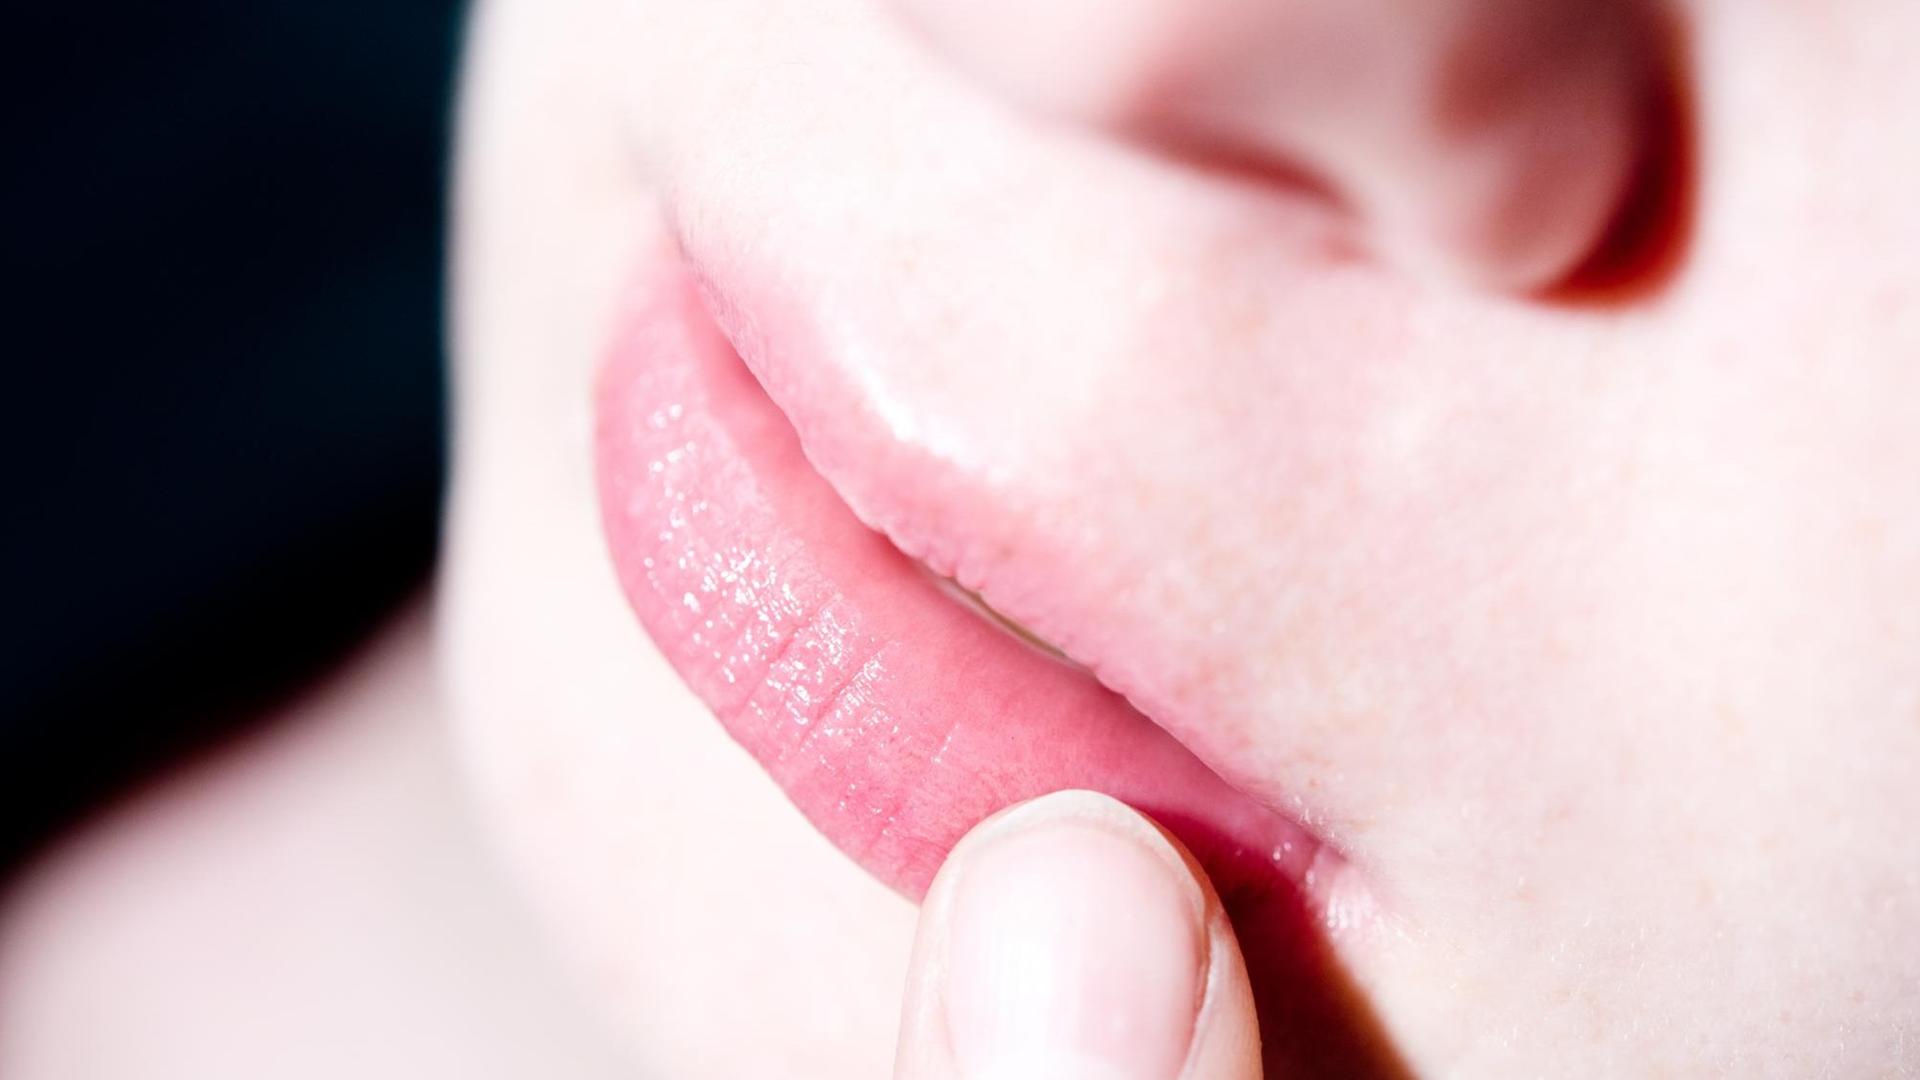 ILLUSTRATION - Eine Frau befühlt mit einem Finger eine juckende und schmerzende Stelle auf ihrer Lippe. Foto: Franziska Gabbert | Verwendung weltweit